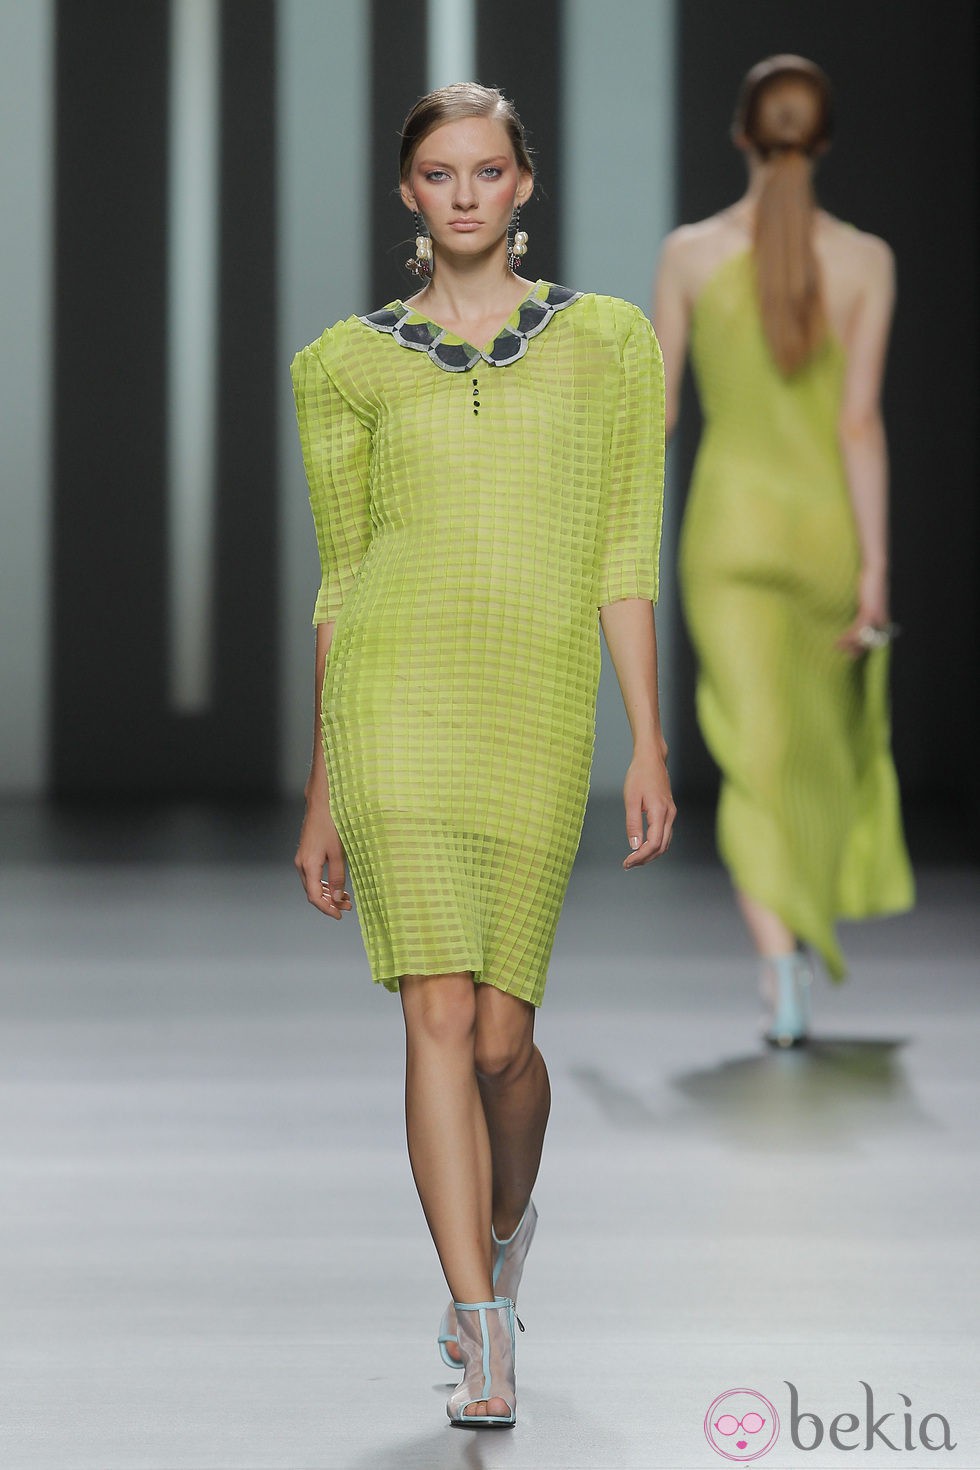 Vestido semitransparente de Martín Lamothe, colección primavera/verano 2013